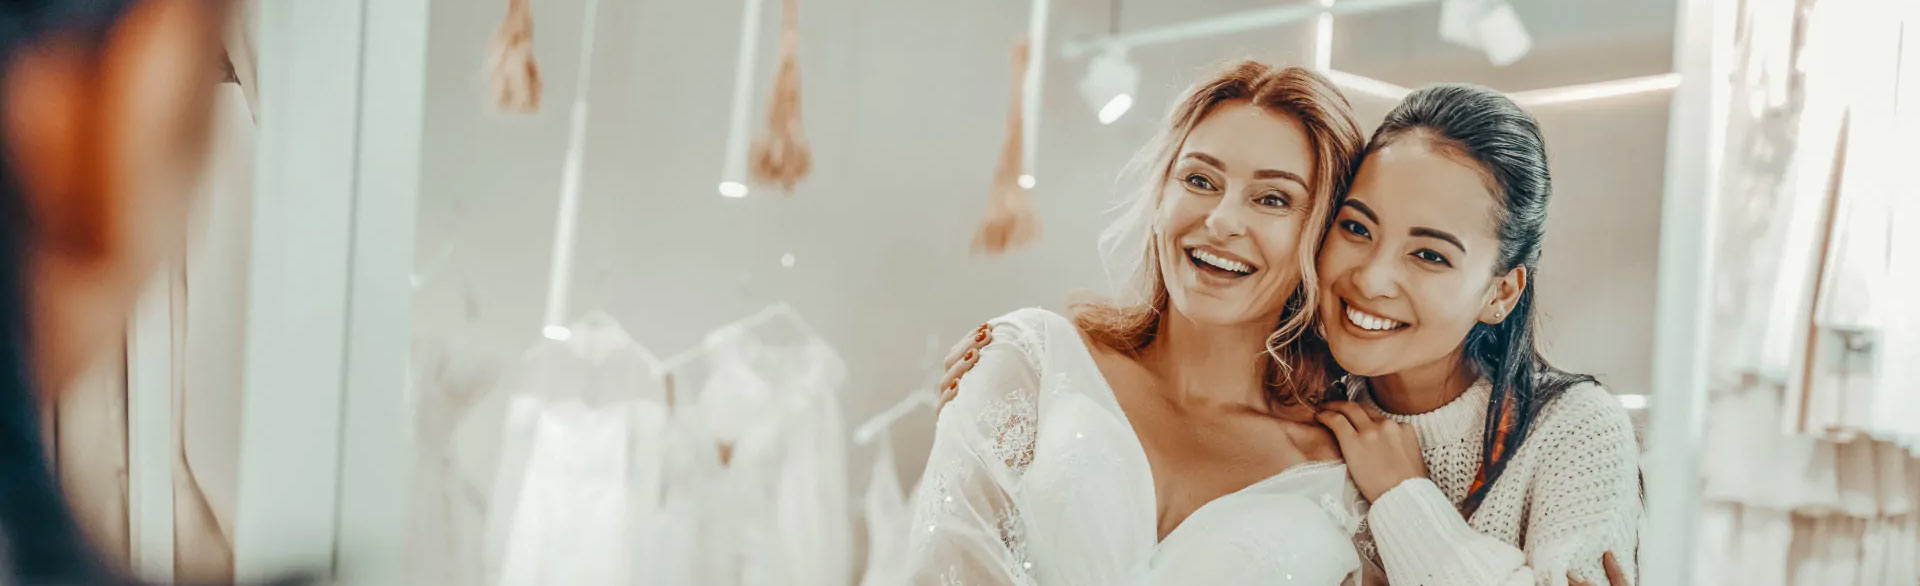 Curvy und Plus Size Brautkleider in Übergröße & Hochzeitskleider für Mollige Frauen - in unserem Brautmodengeschäft